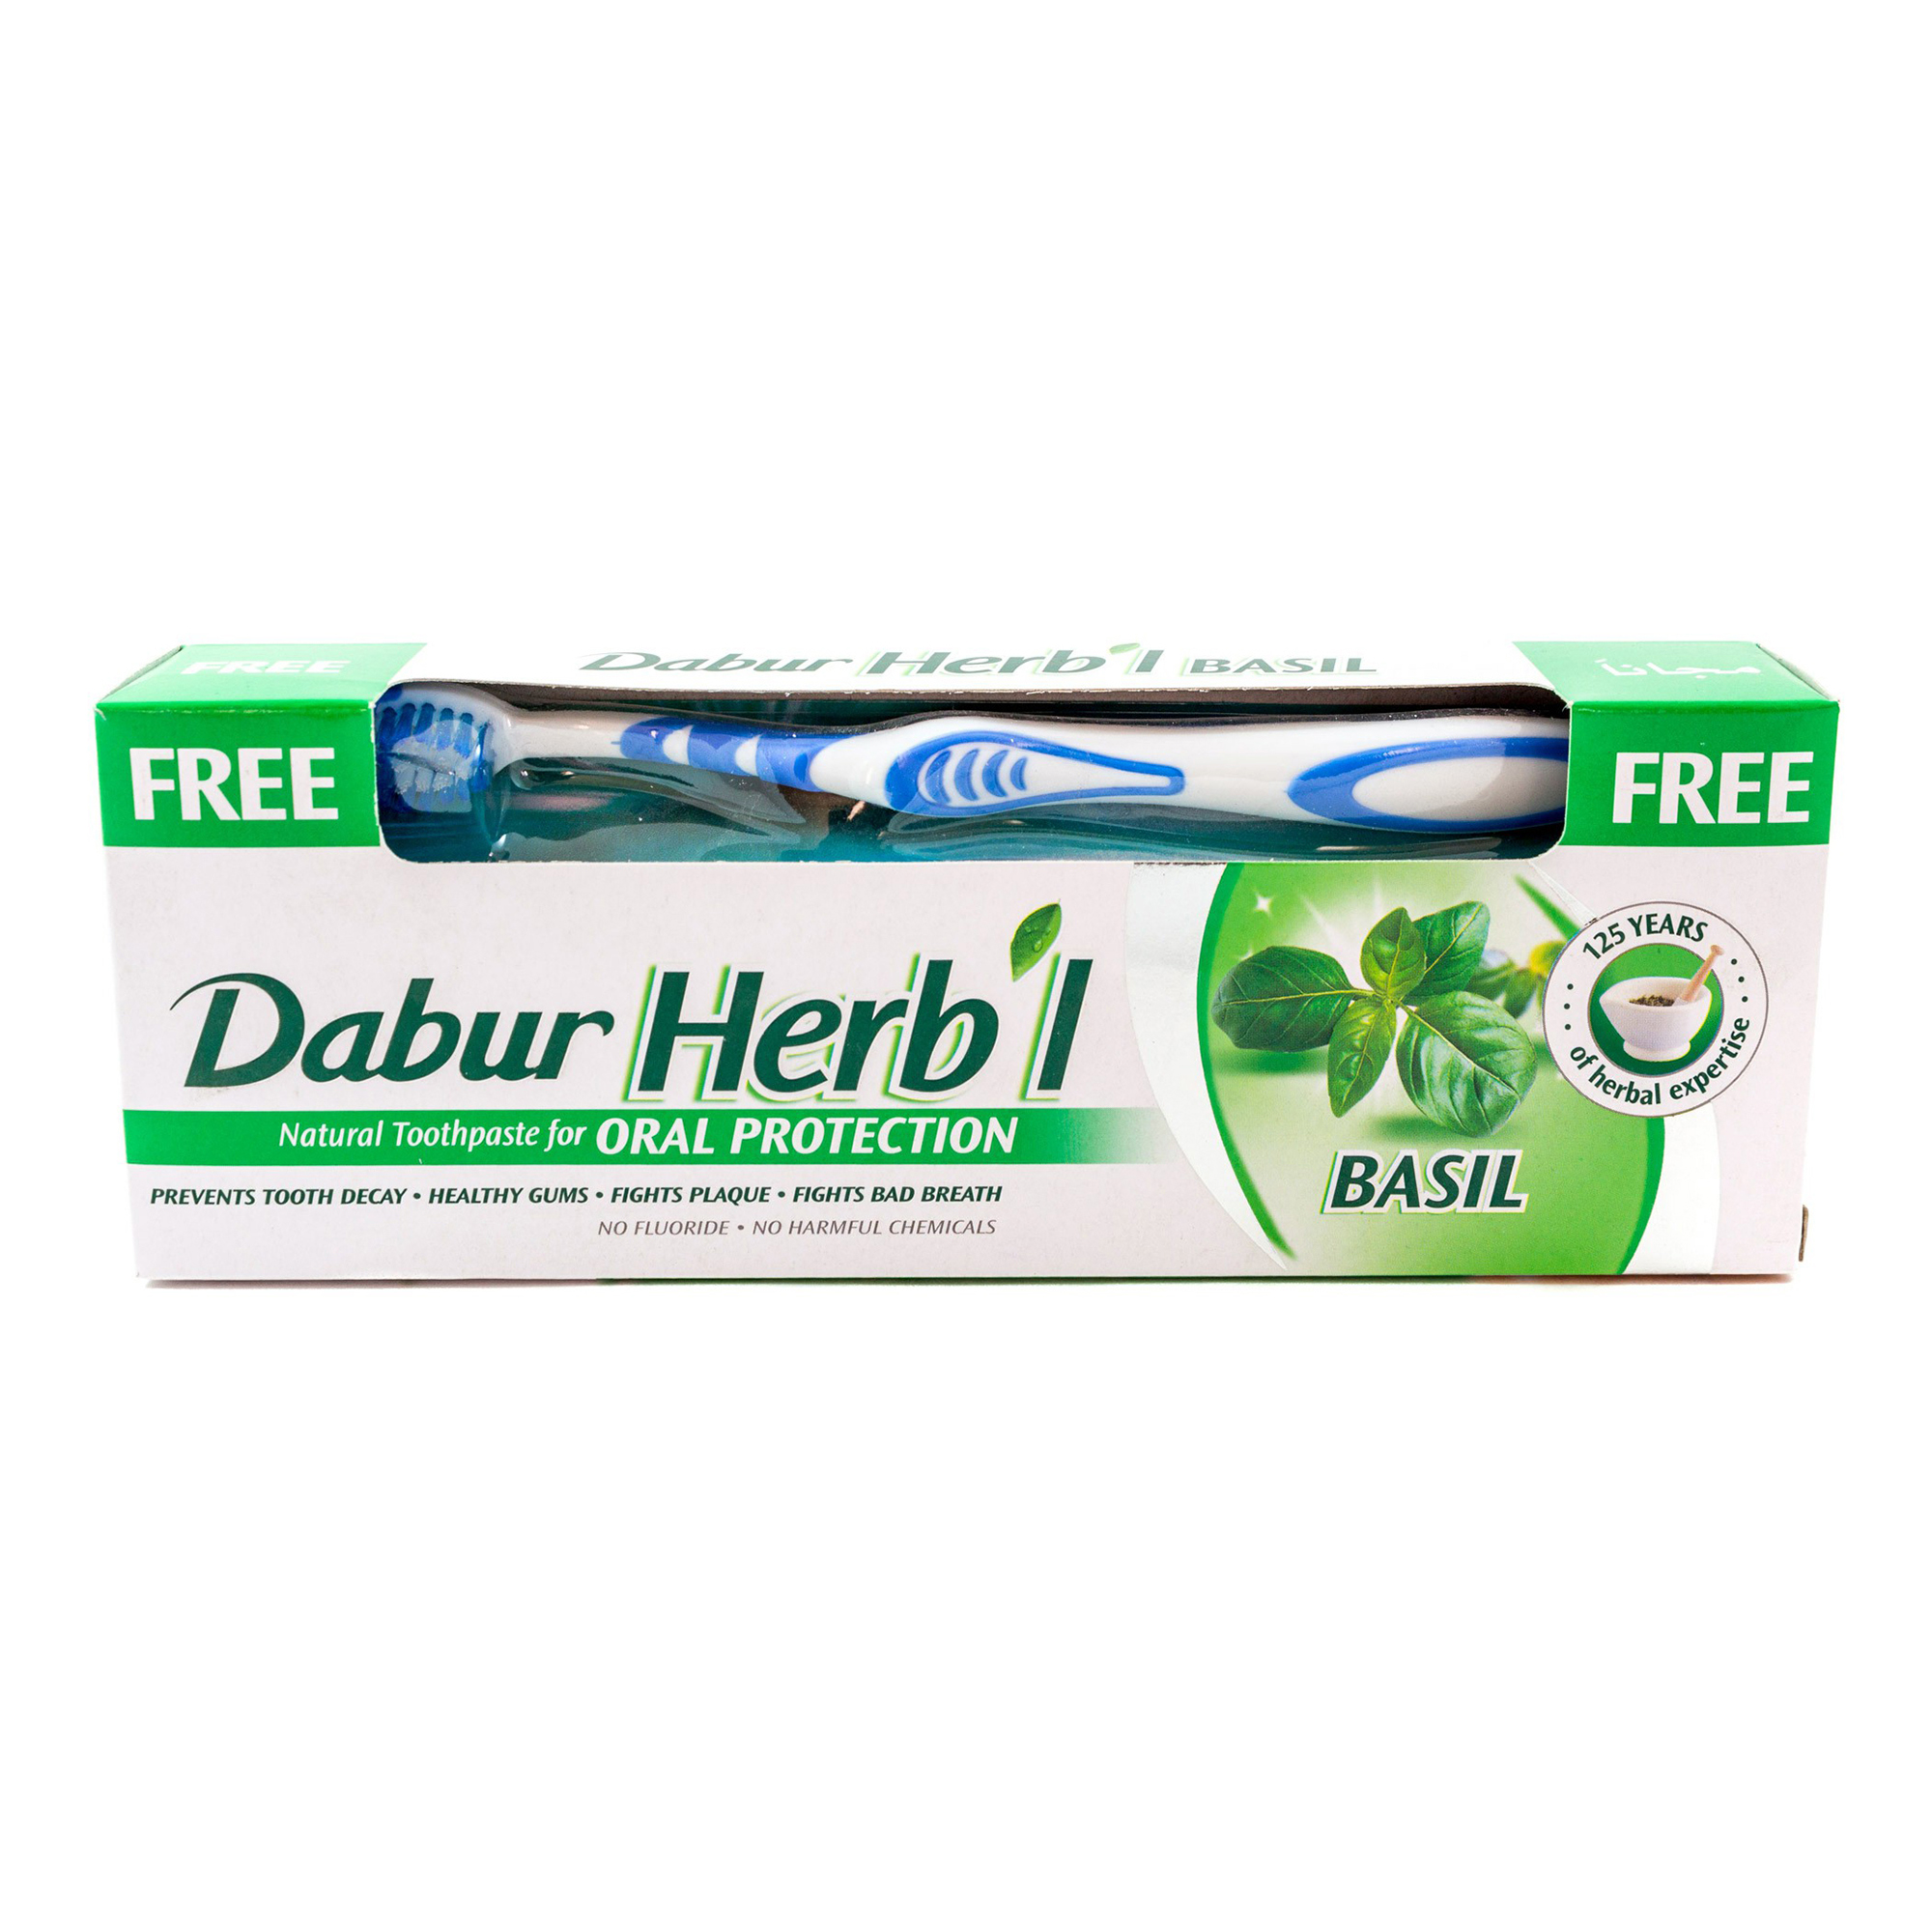 Зубная паста Dabur Herb'l Basil с зубной щеткой 150 г зубная паста dabur herb’l aloe vera с экстрактом алое 150 г в комплекте с зубной щеткой